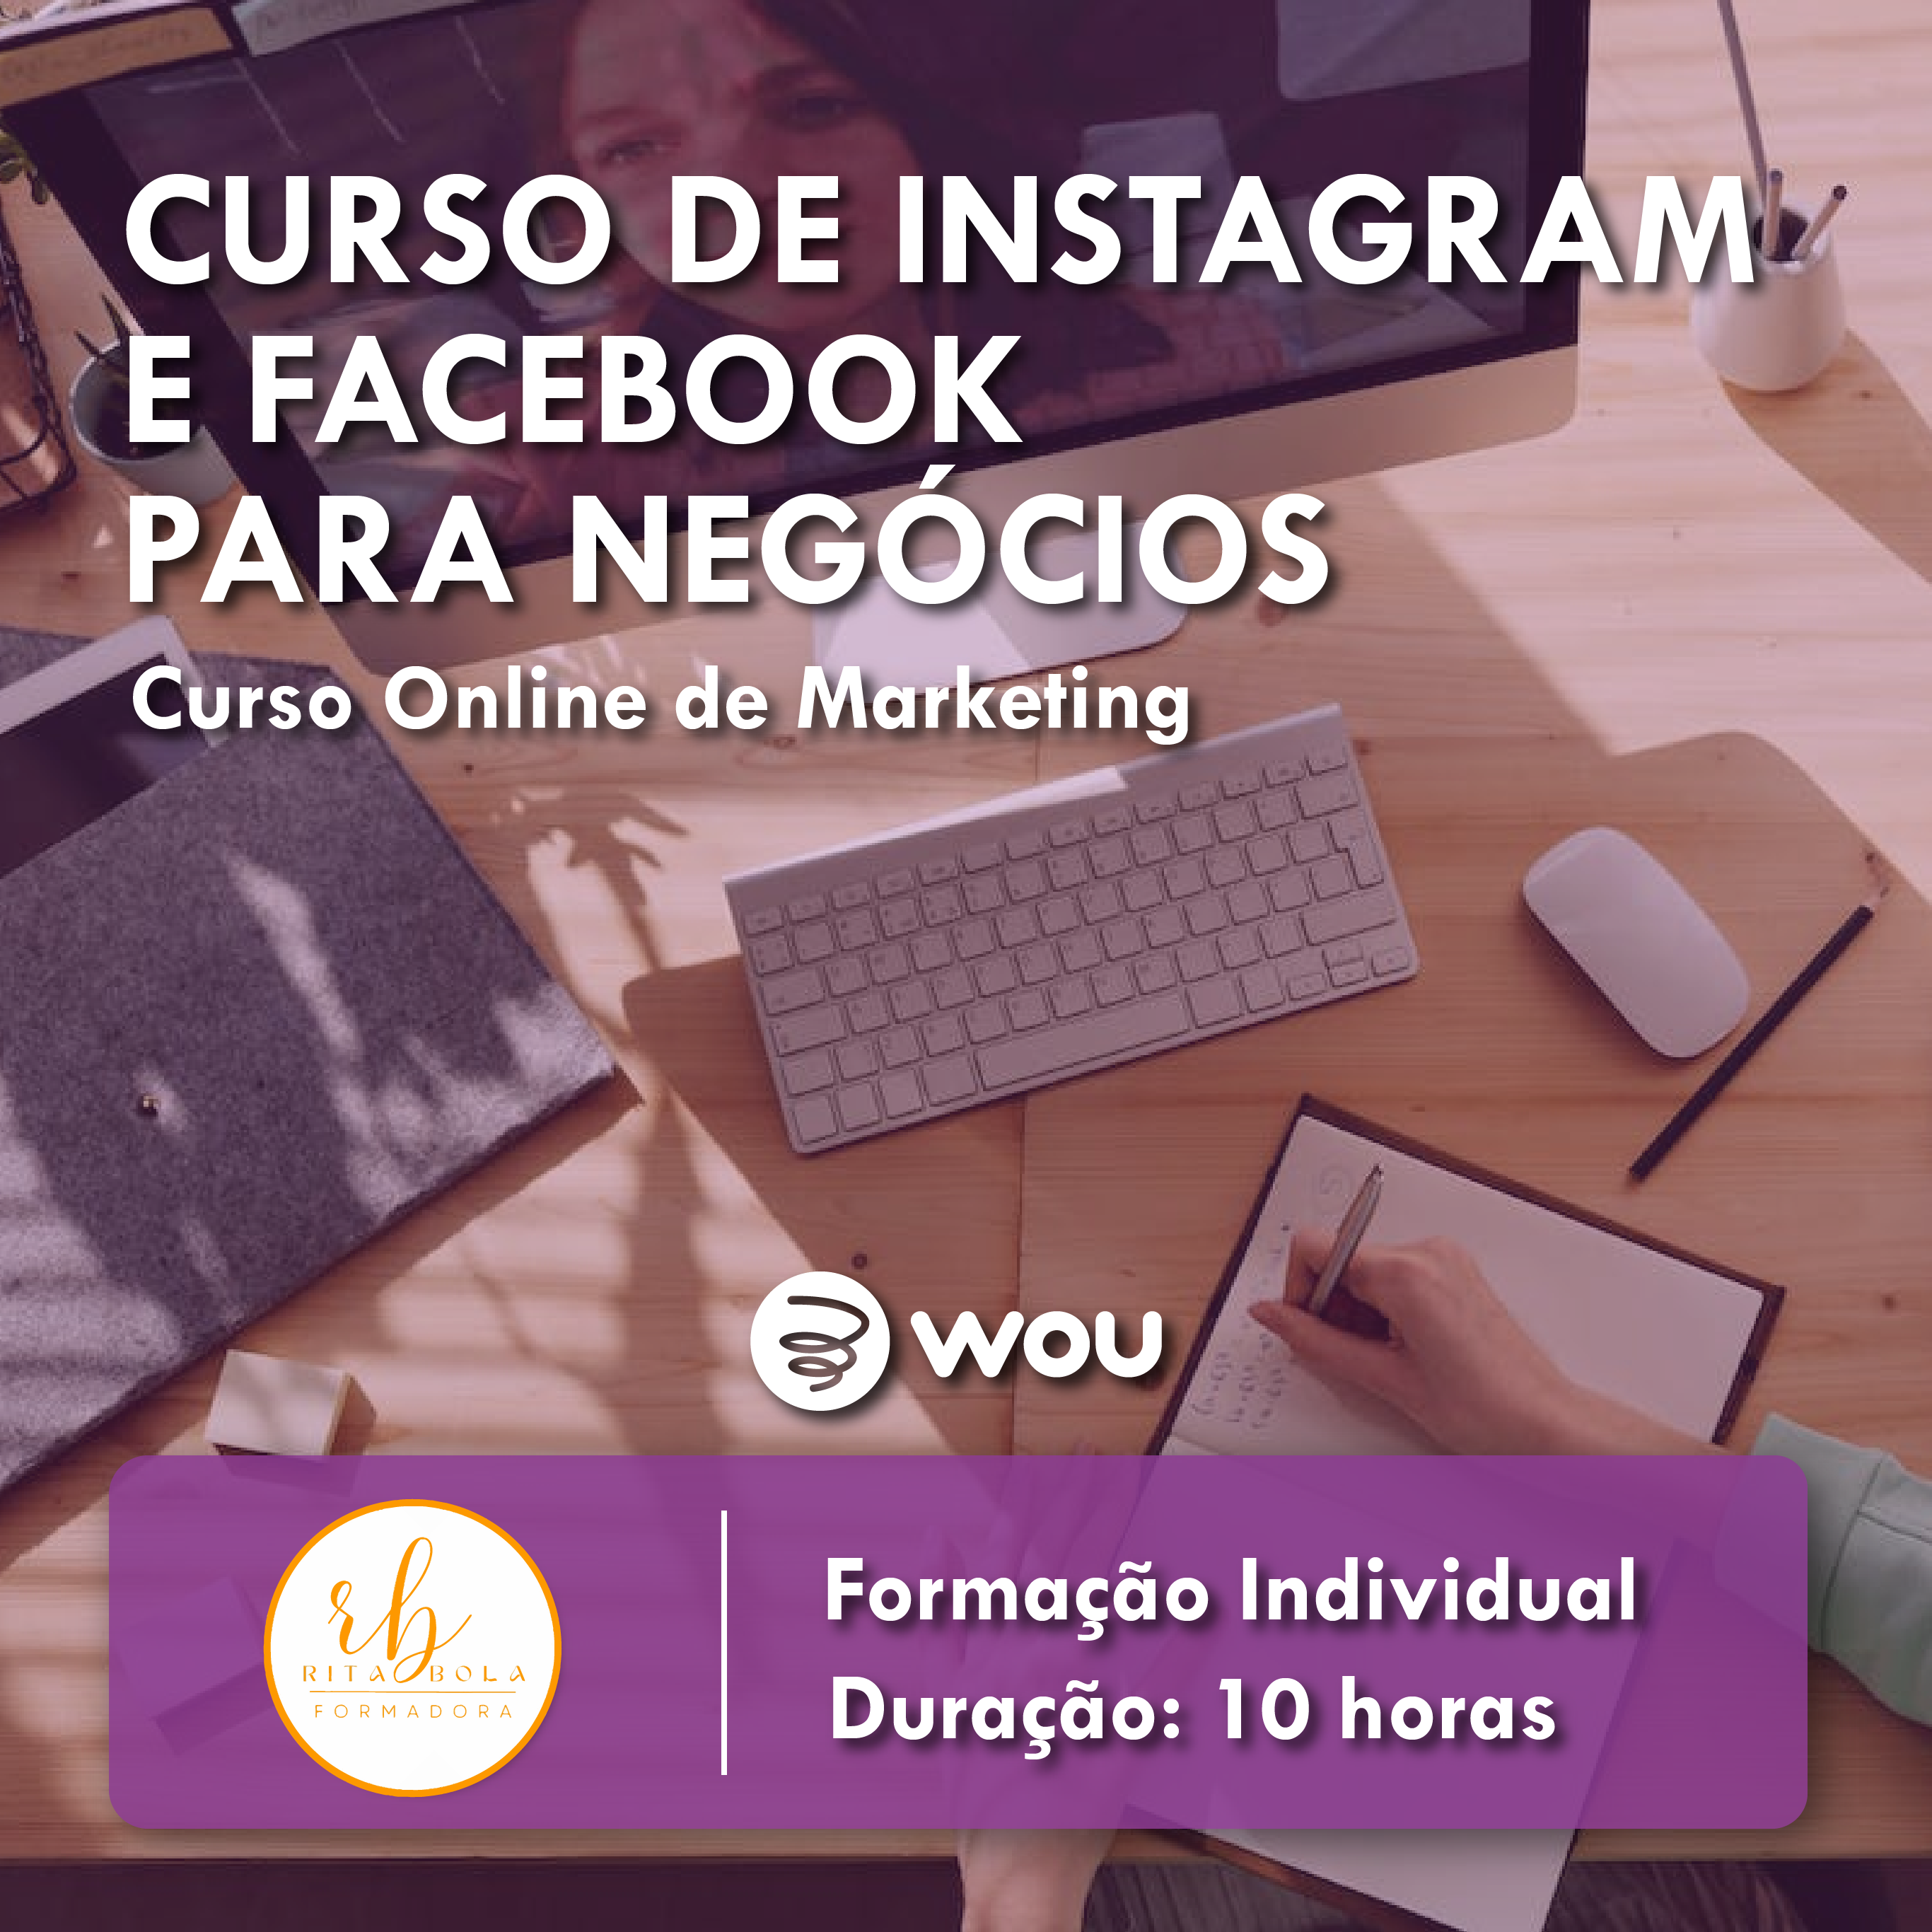 Curso Online de Facebook e Instagram para Negócios